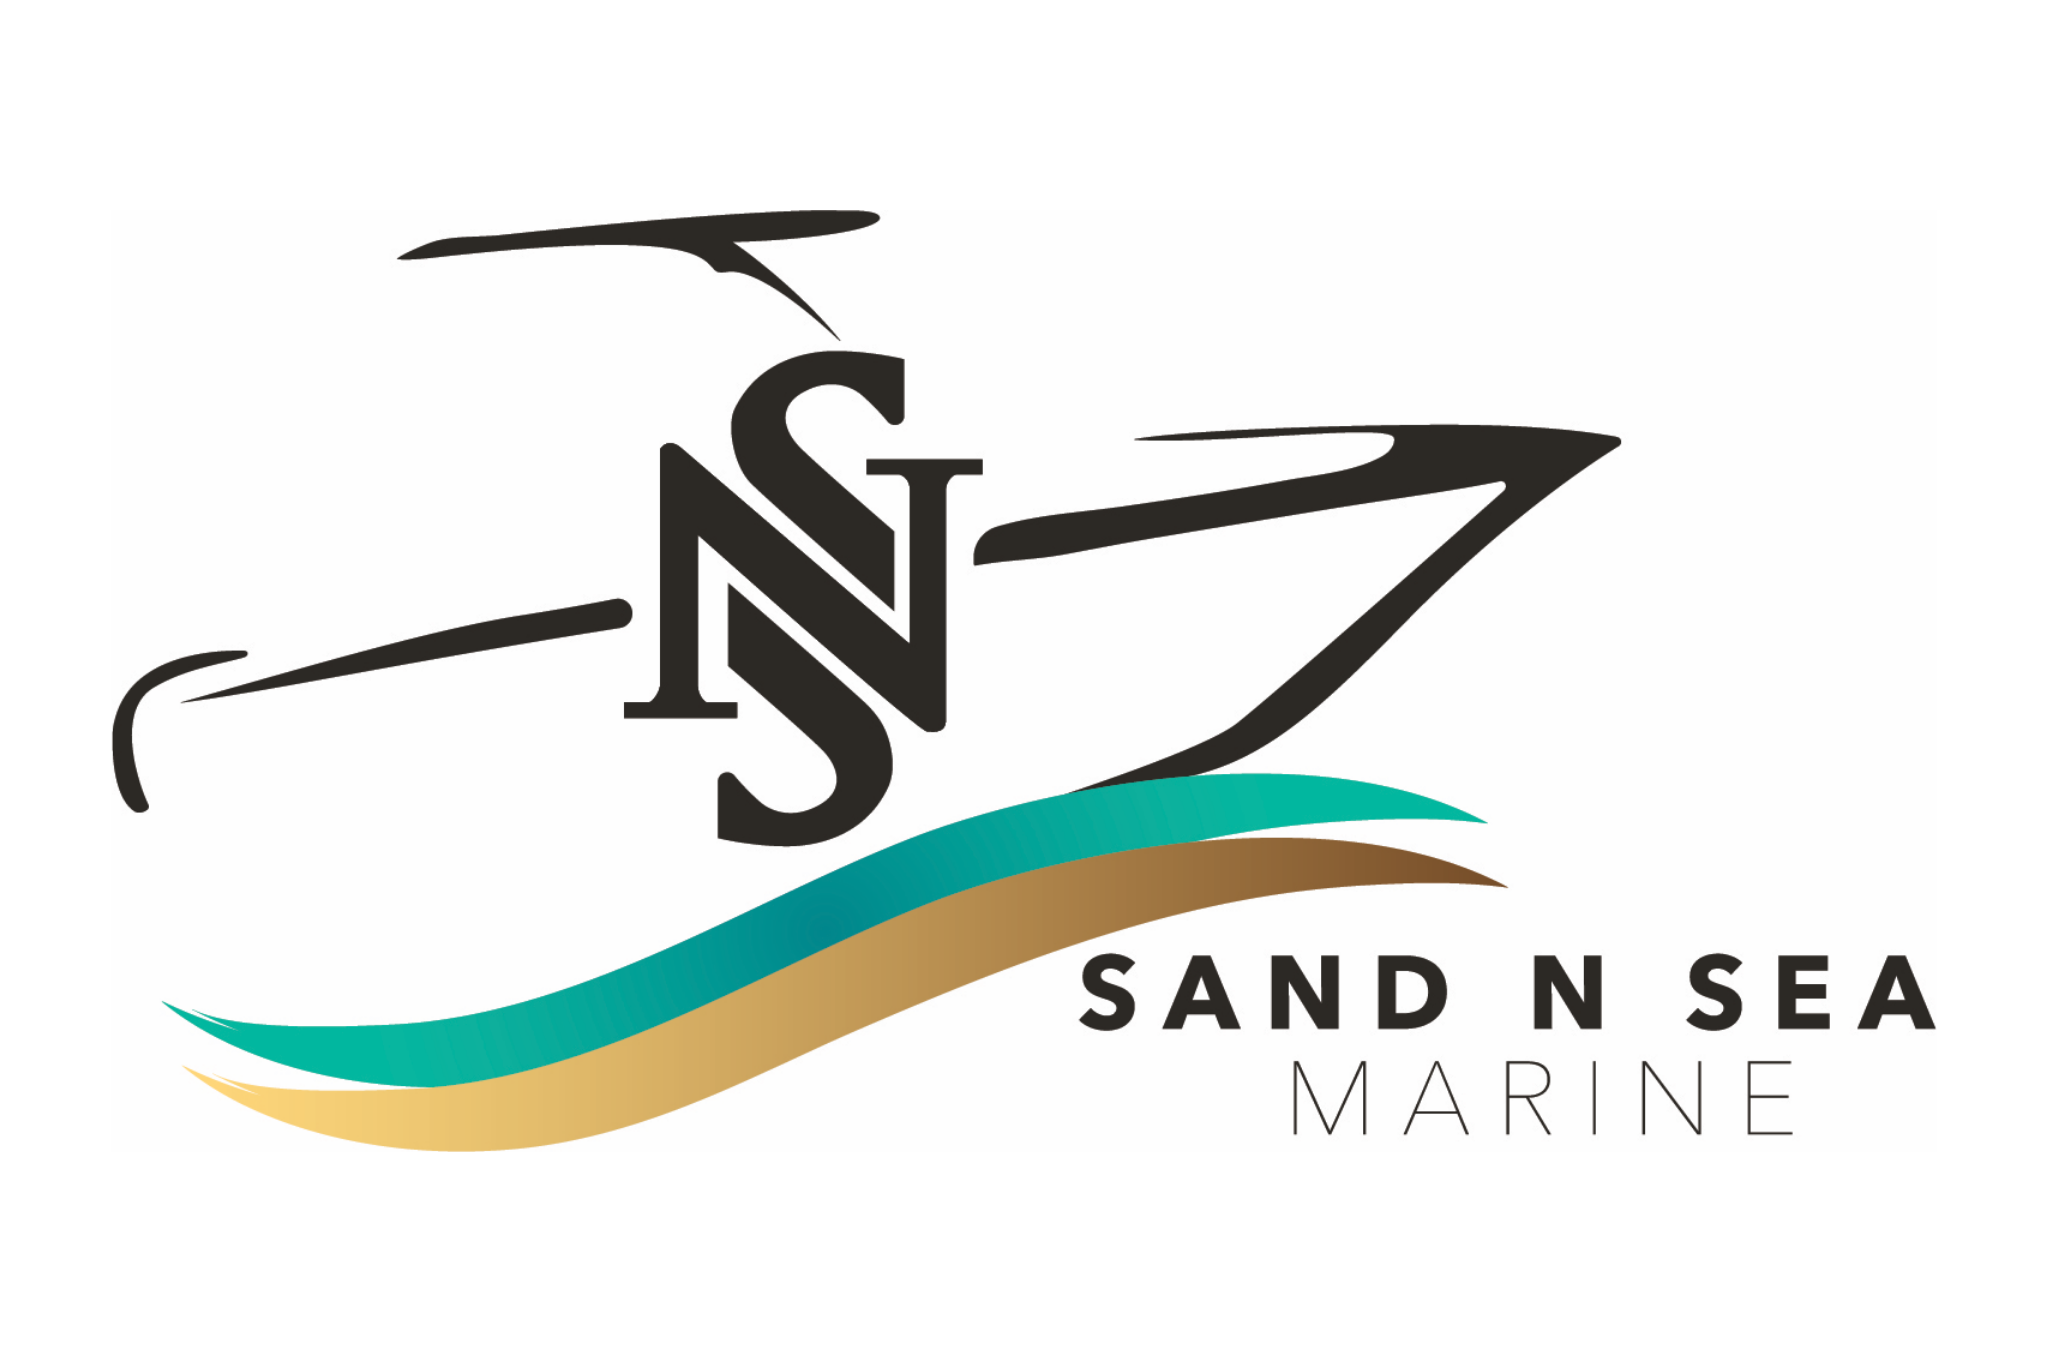 Sand N Sea Marine